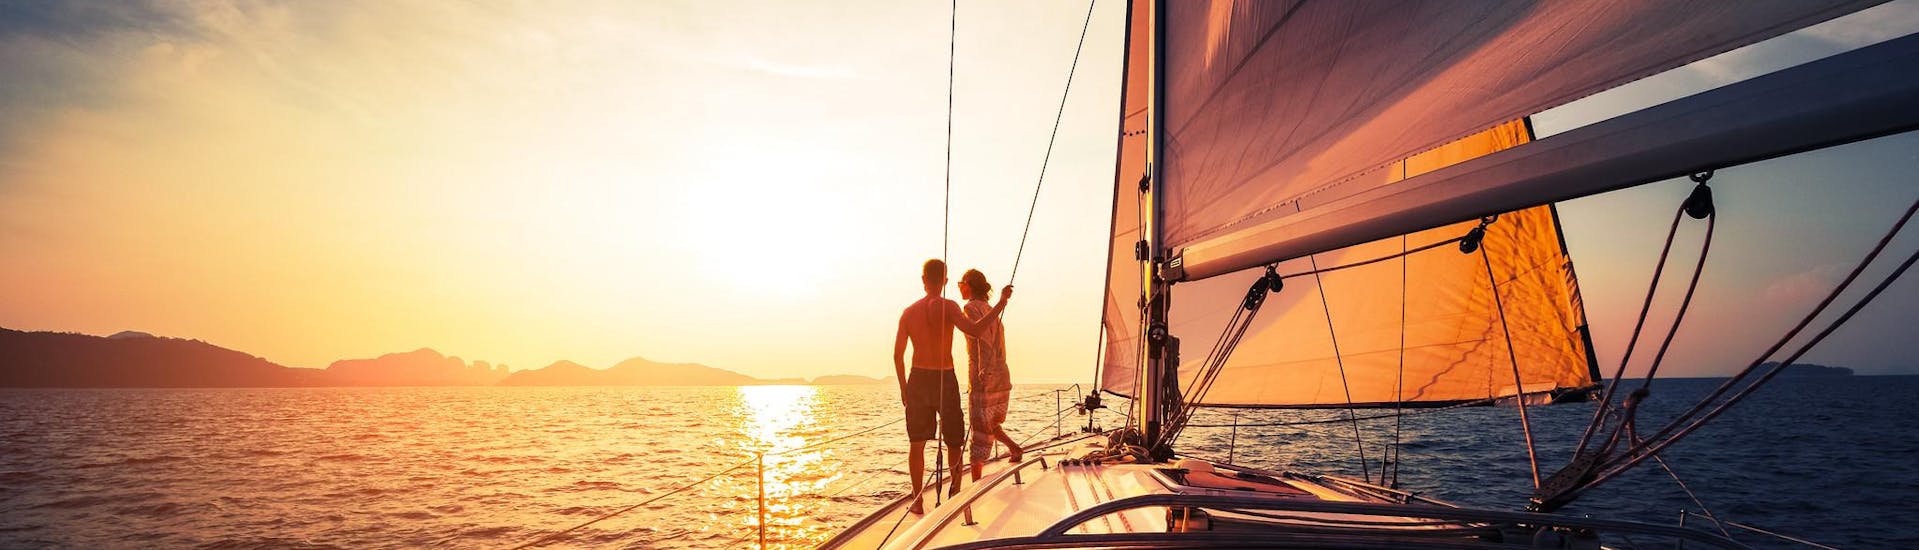 Una coppia che si gode il panorama durante una romantica gita in barca.